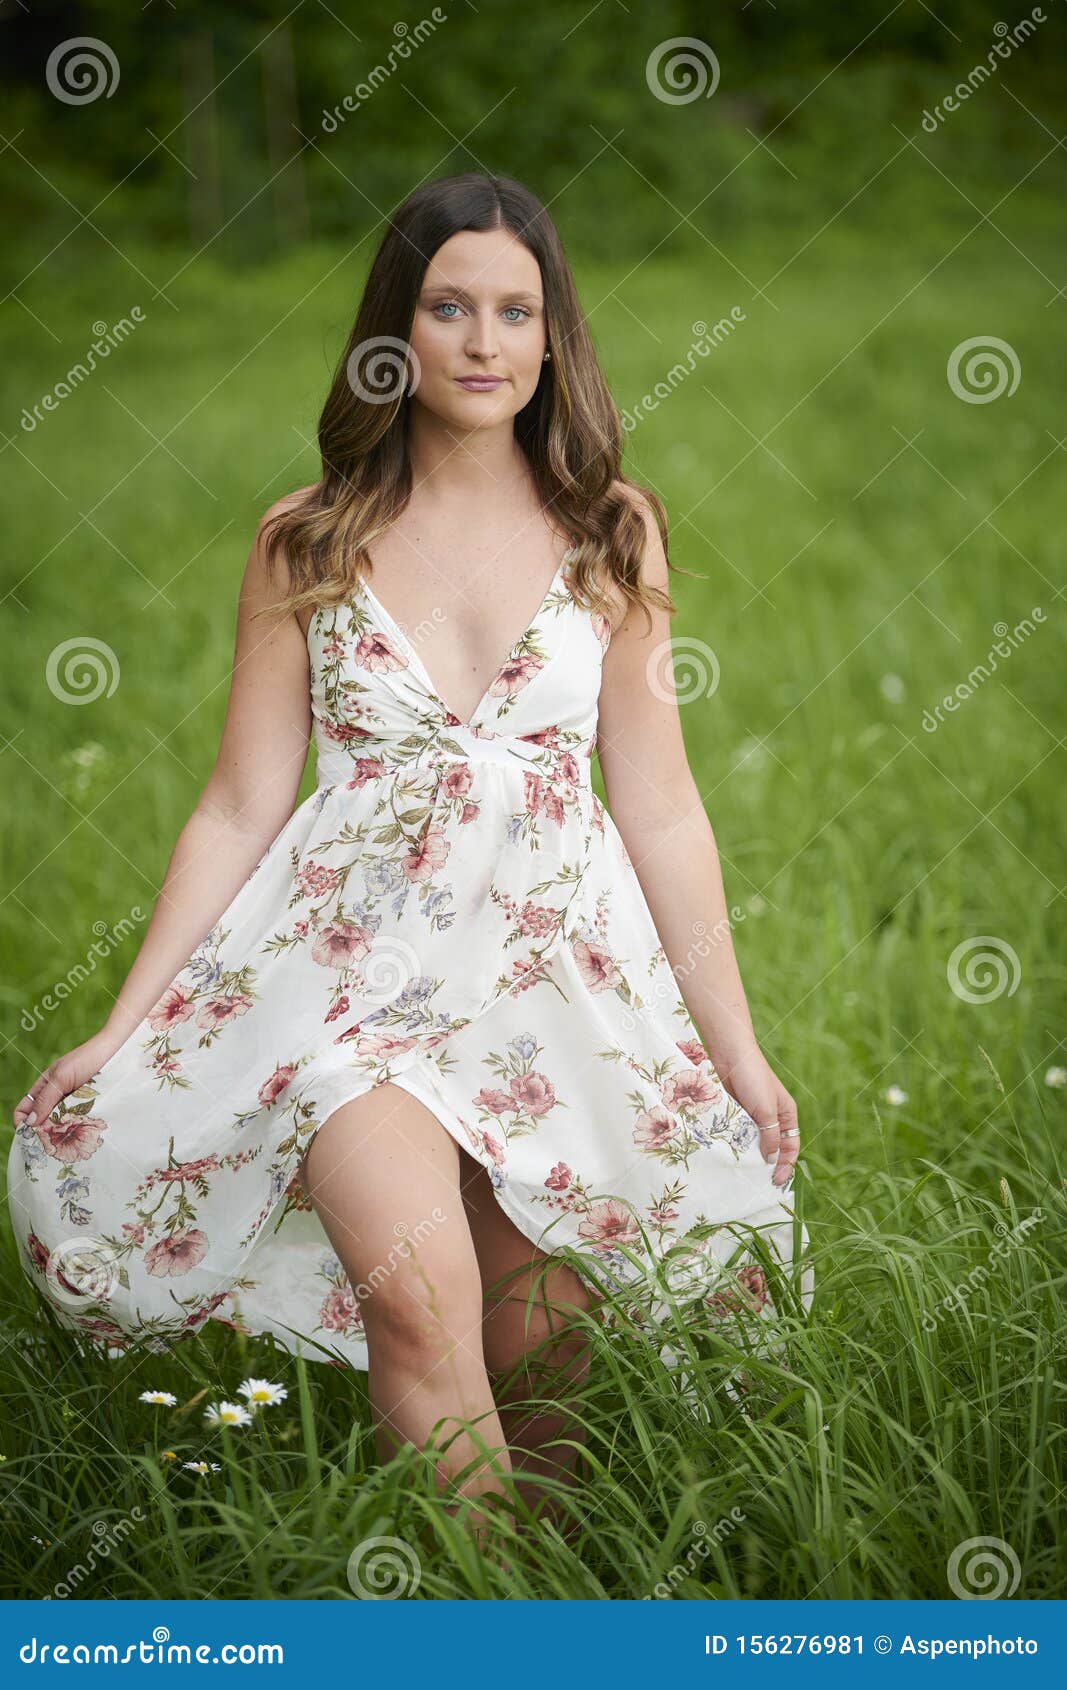 girl in sun dress